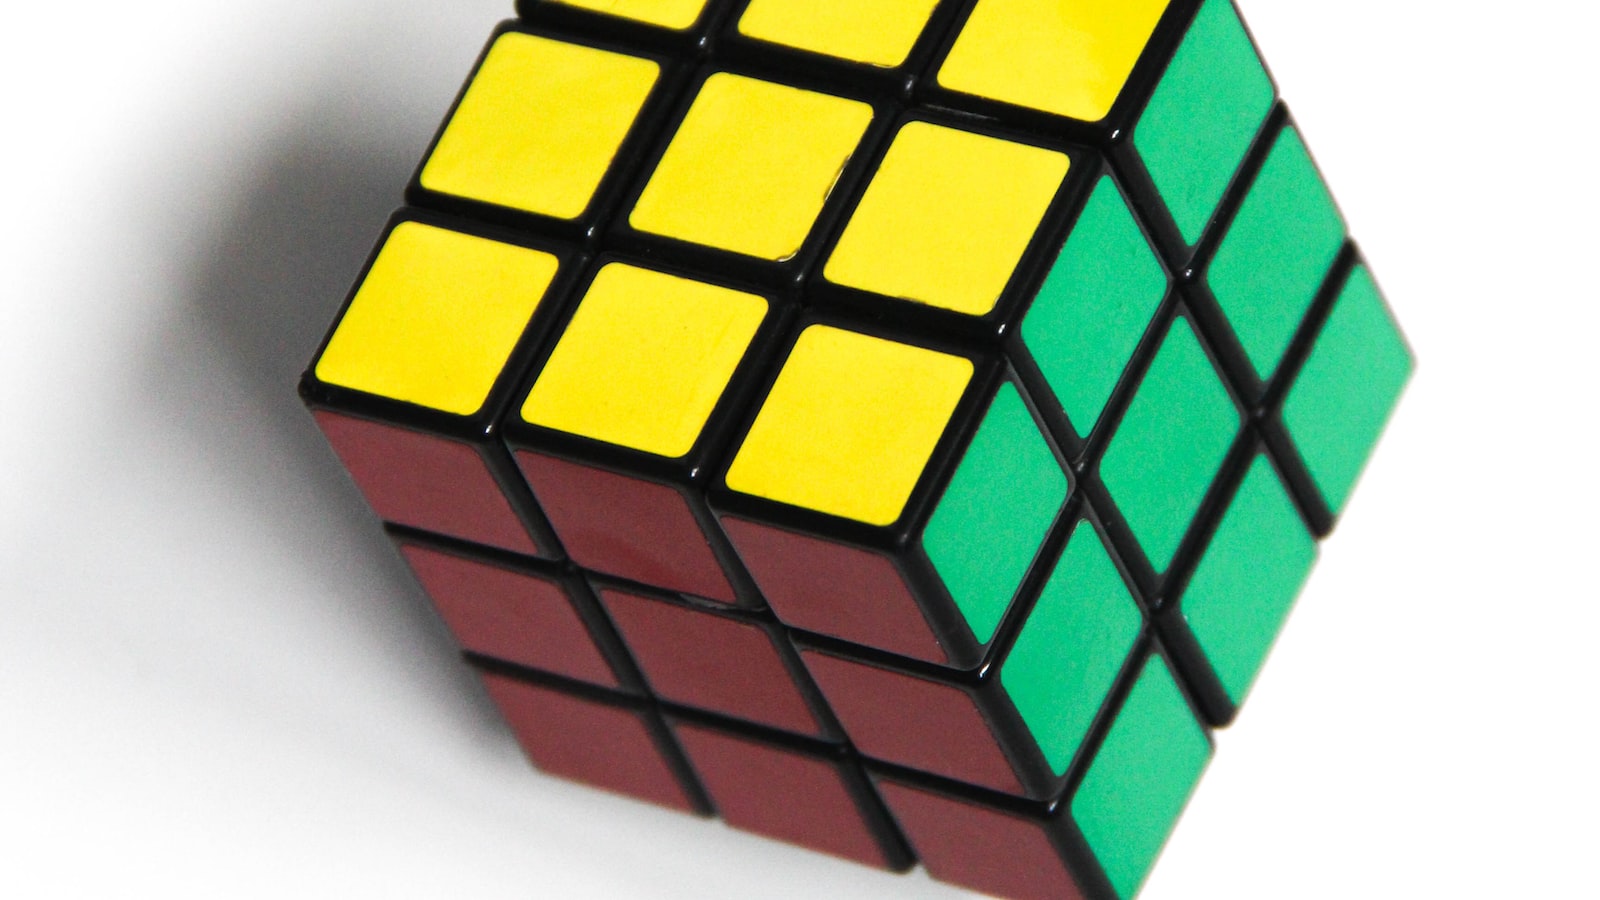 3. Chia sẻ kinh nghiệm qua Rubik 4x4